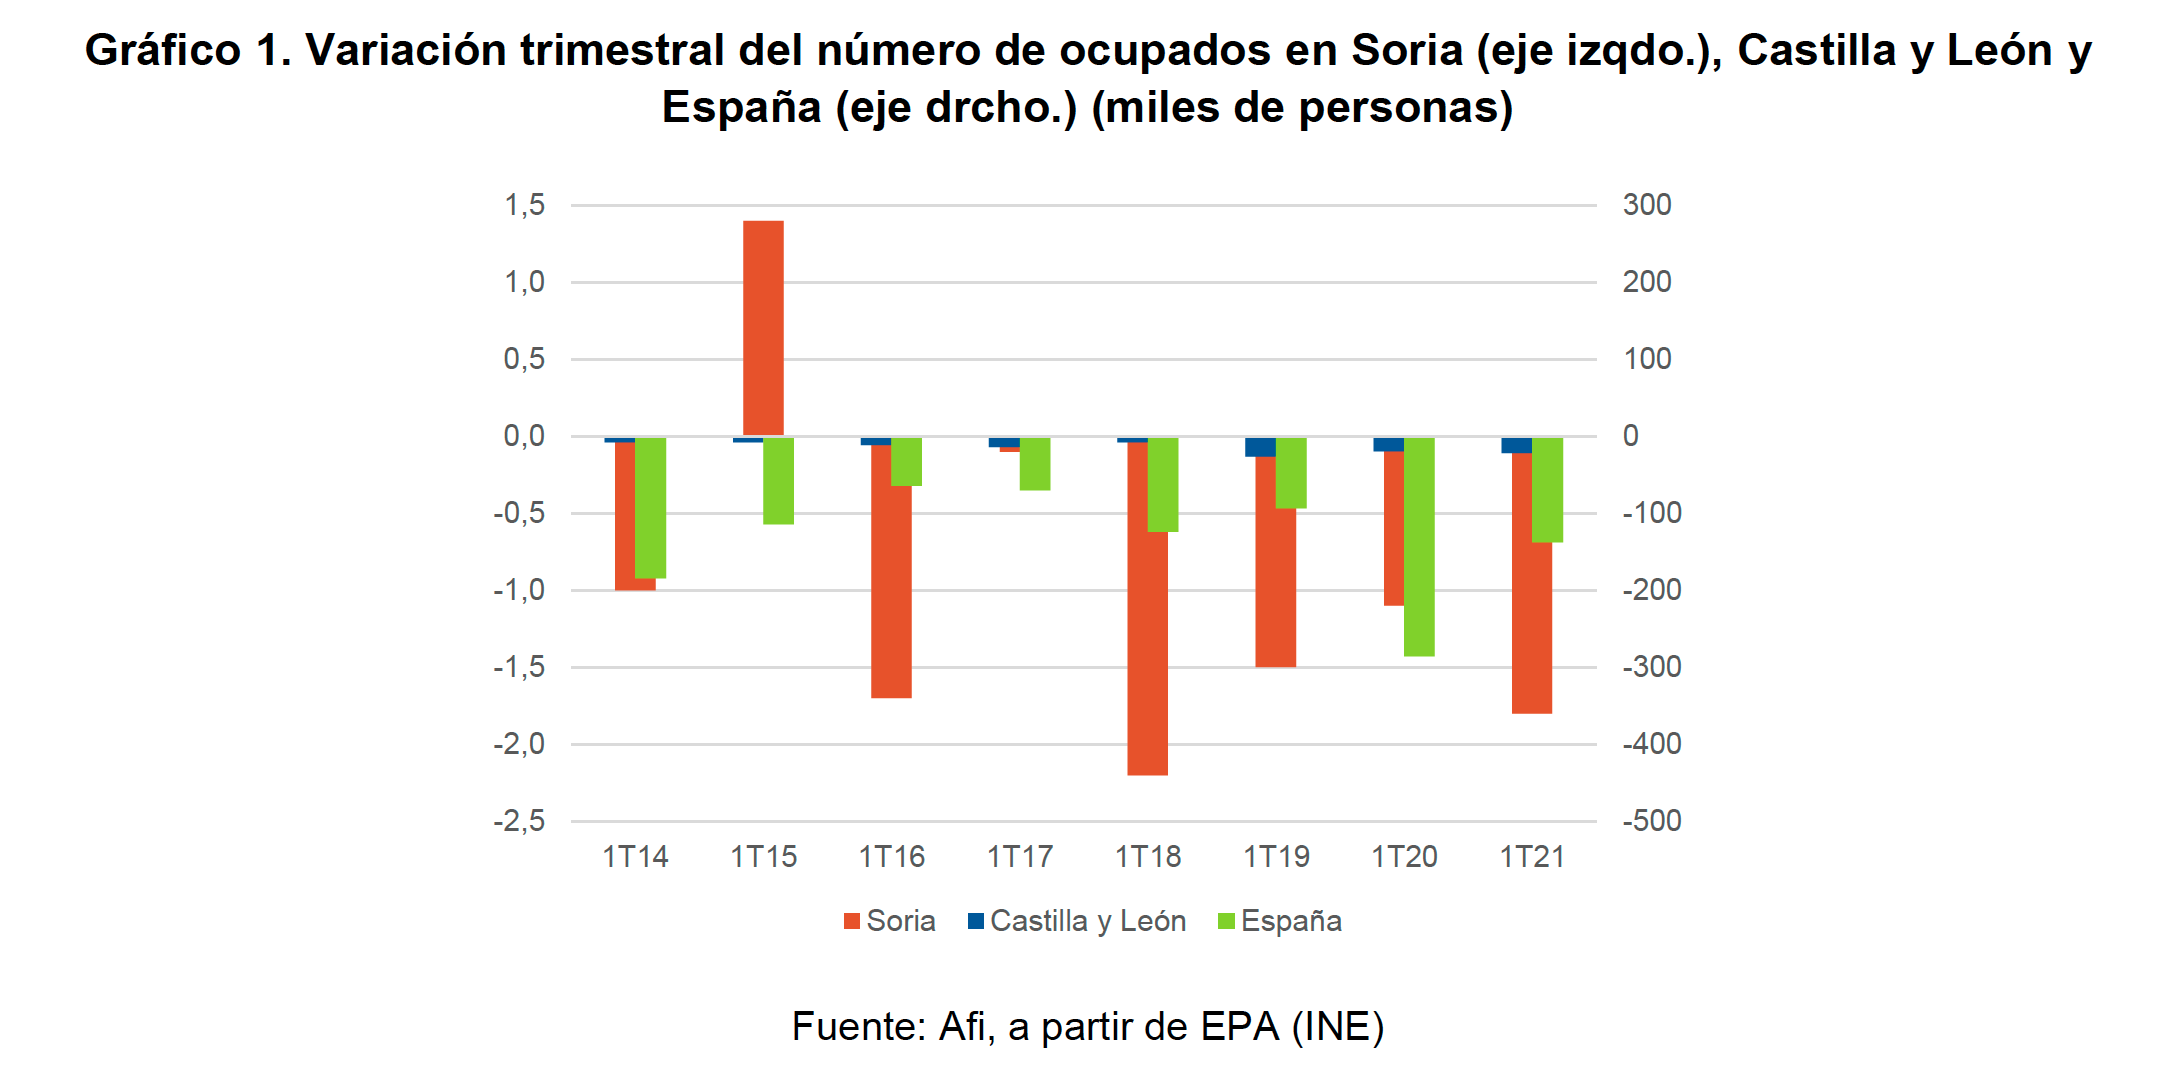 Gráfico 1. Variación trimestral del número de ocupados en Soria (eje izqdo.), Castilla y León y España (eje drcho.) (miles de personas) 